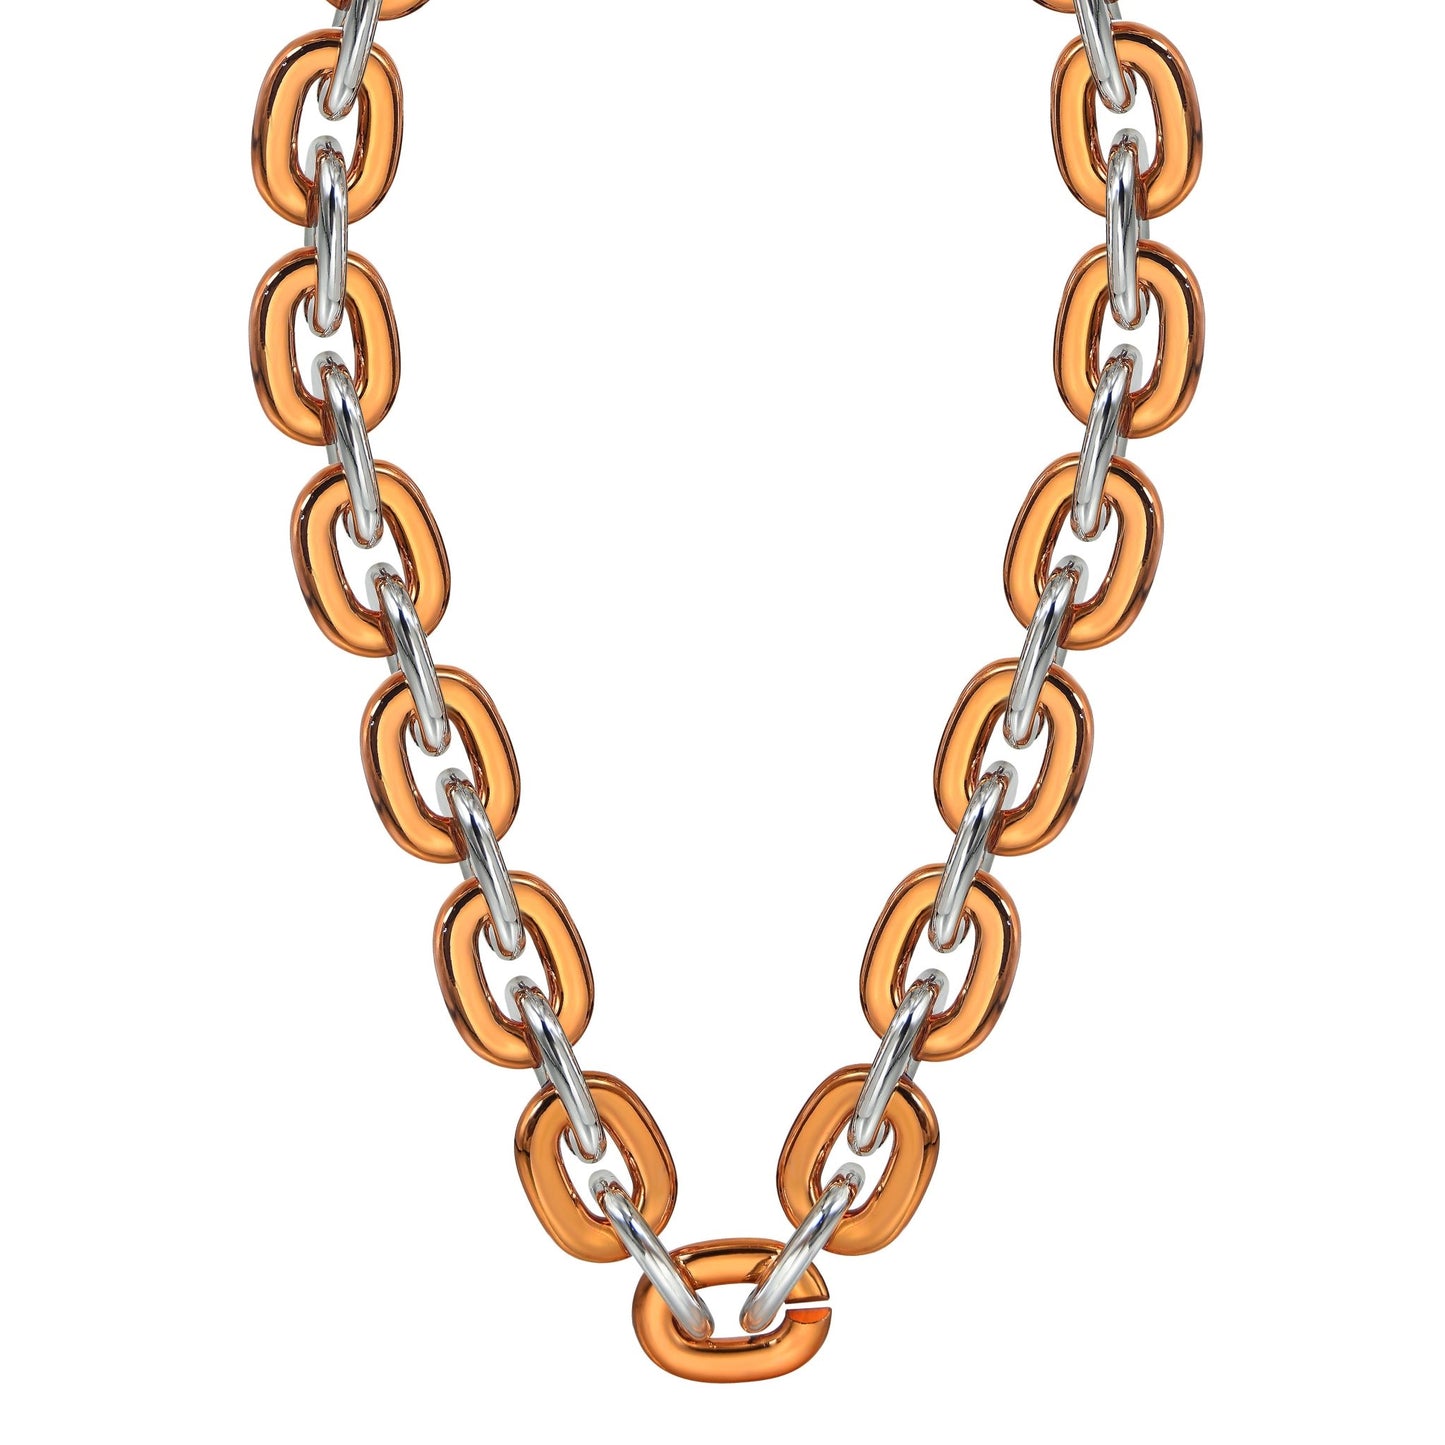 Jumbo Fan Chain Necklace - Gamedays Gear - Orange / Silver